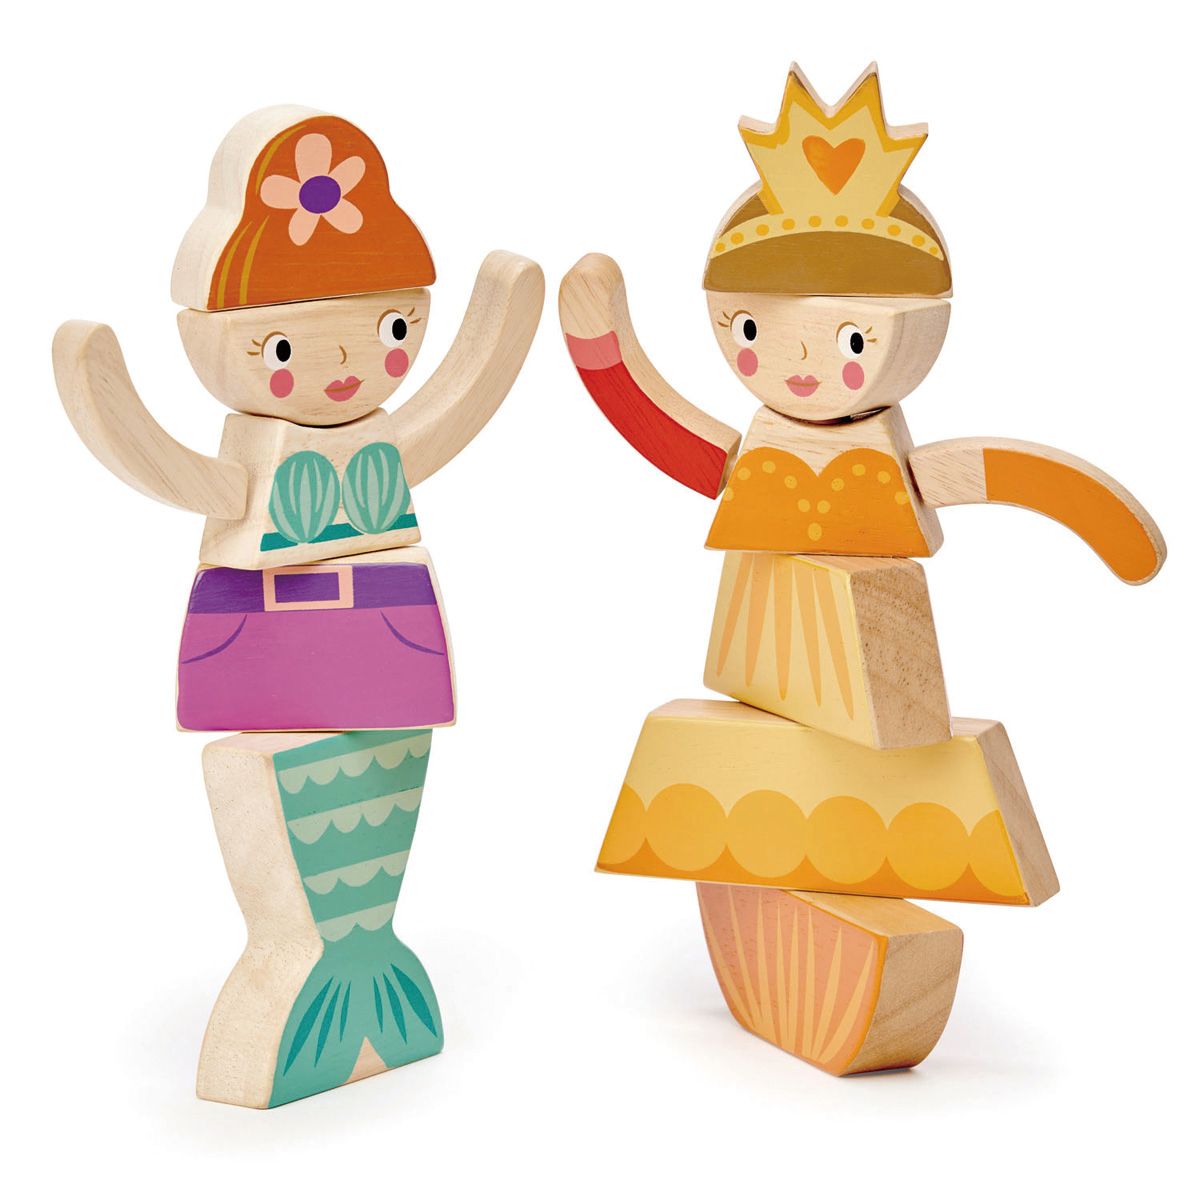 Tender Leaf Toys - Princesses and Mermaids